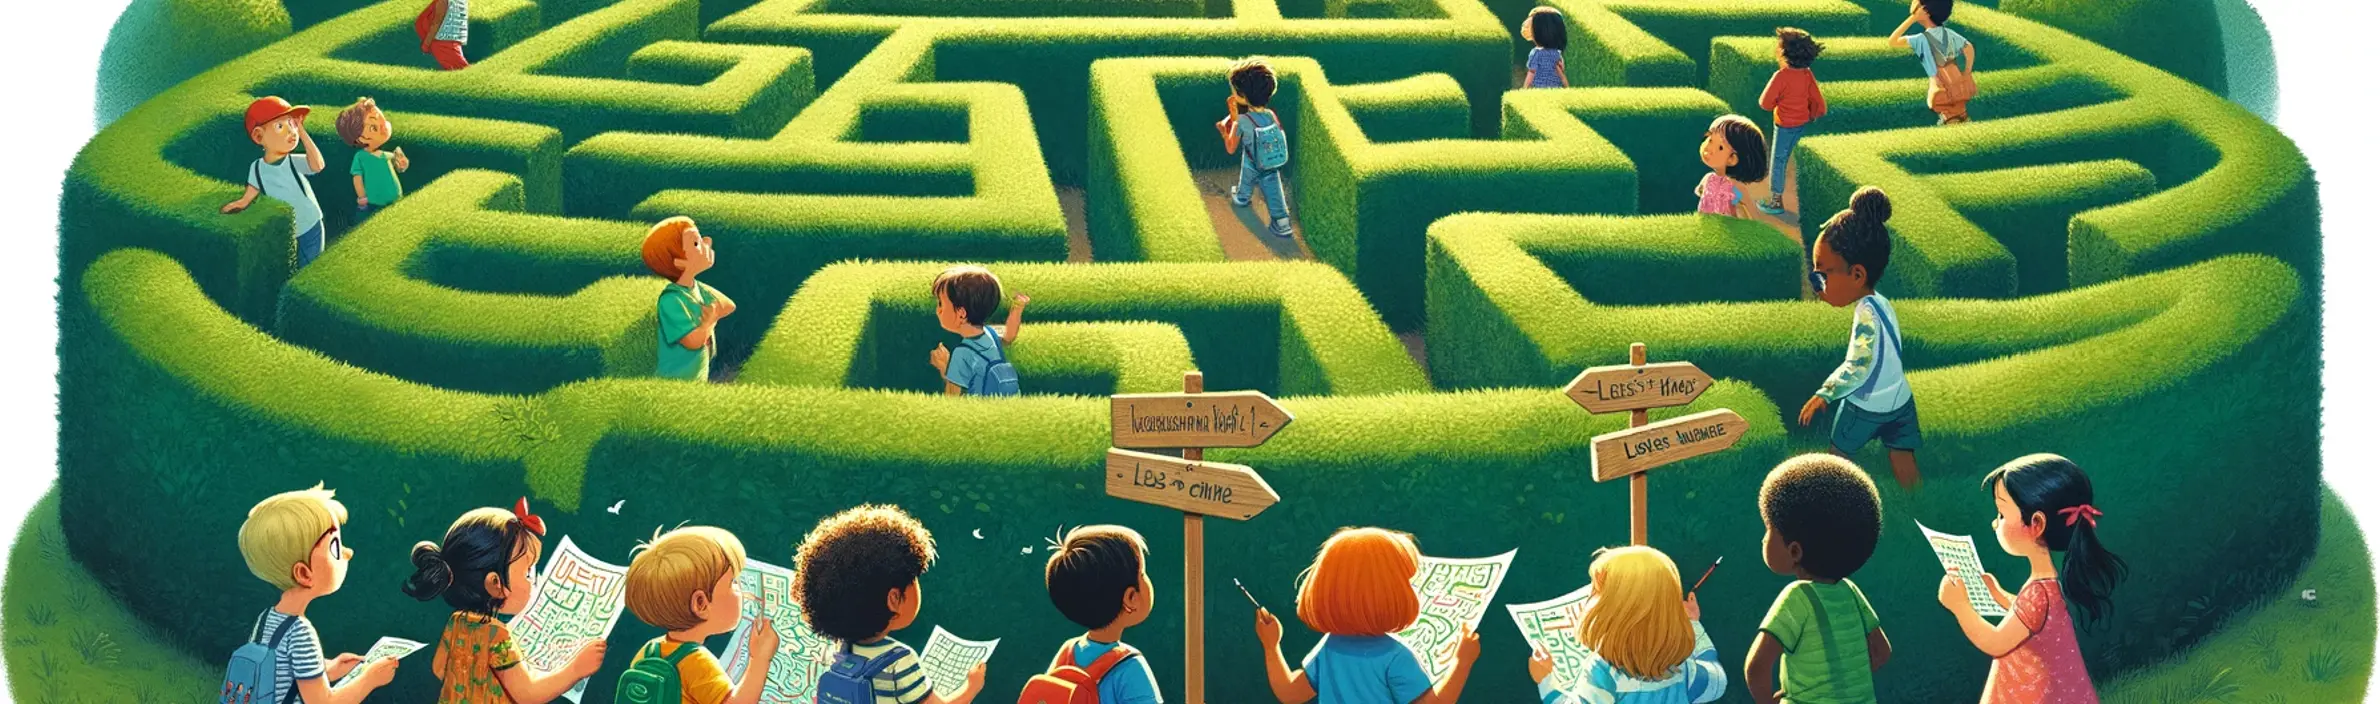 les enfants de maternelle entrain de suivre les instructions pour se déplacer dans un labyrinthe